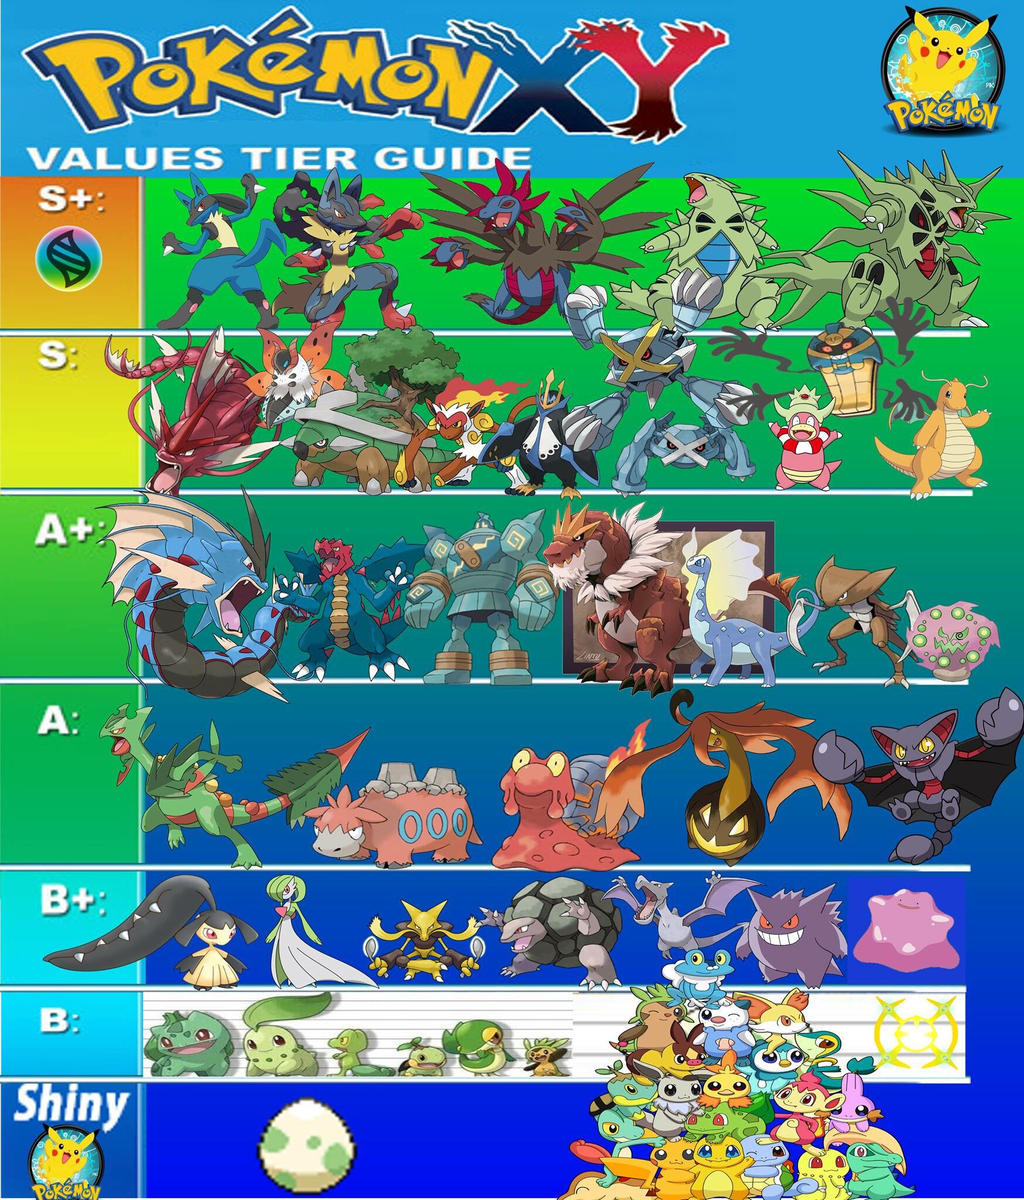 Pokemon X Y Gts Trading Values Tier Guide 2 By Elderguardian On Deviantart